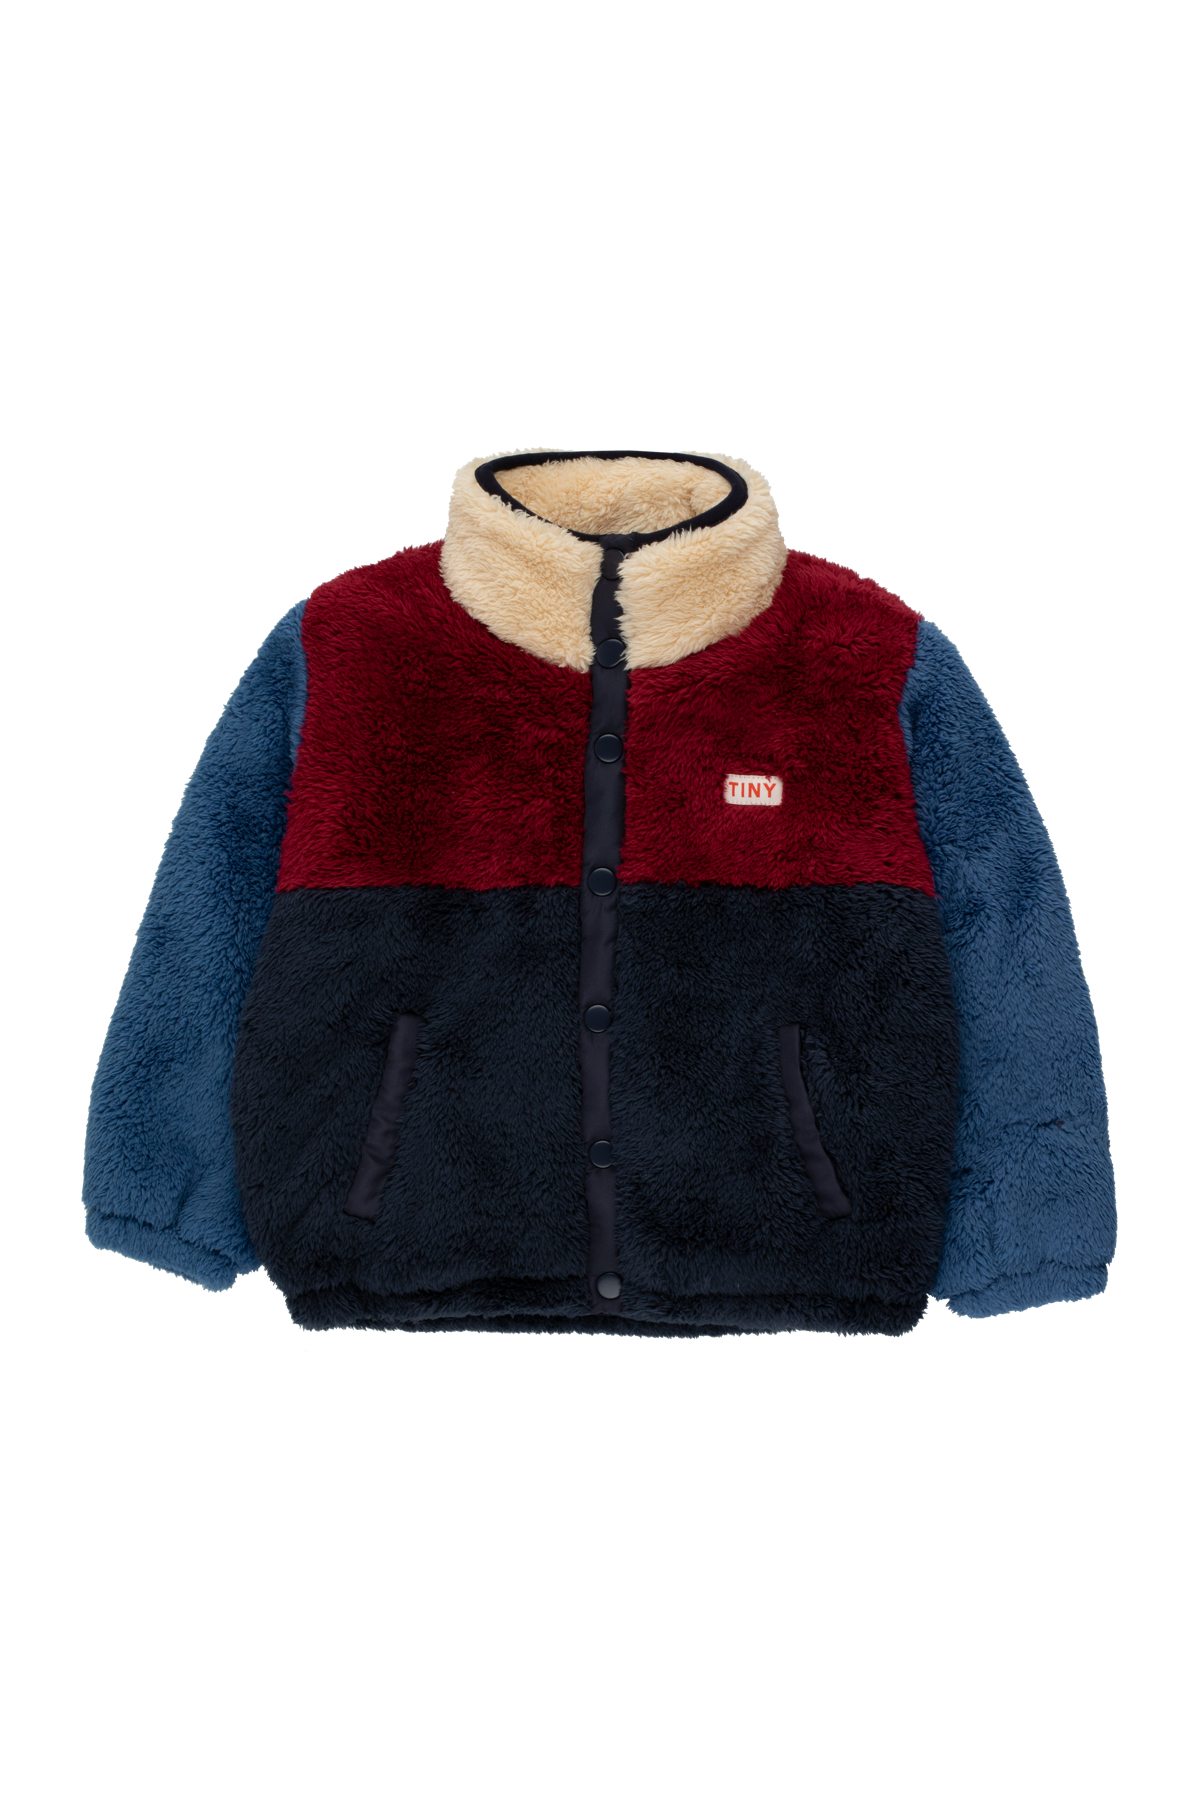 Tiny Cottons kožíšková bunda Color Block Polar navy/deep red 8 roků (128 cm)